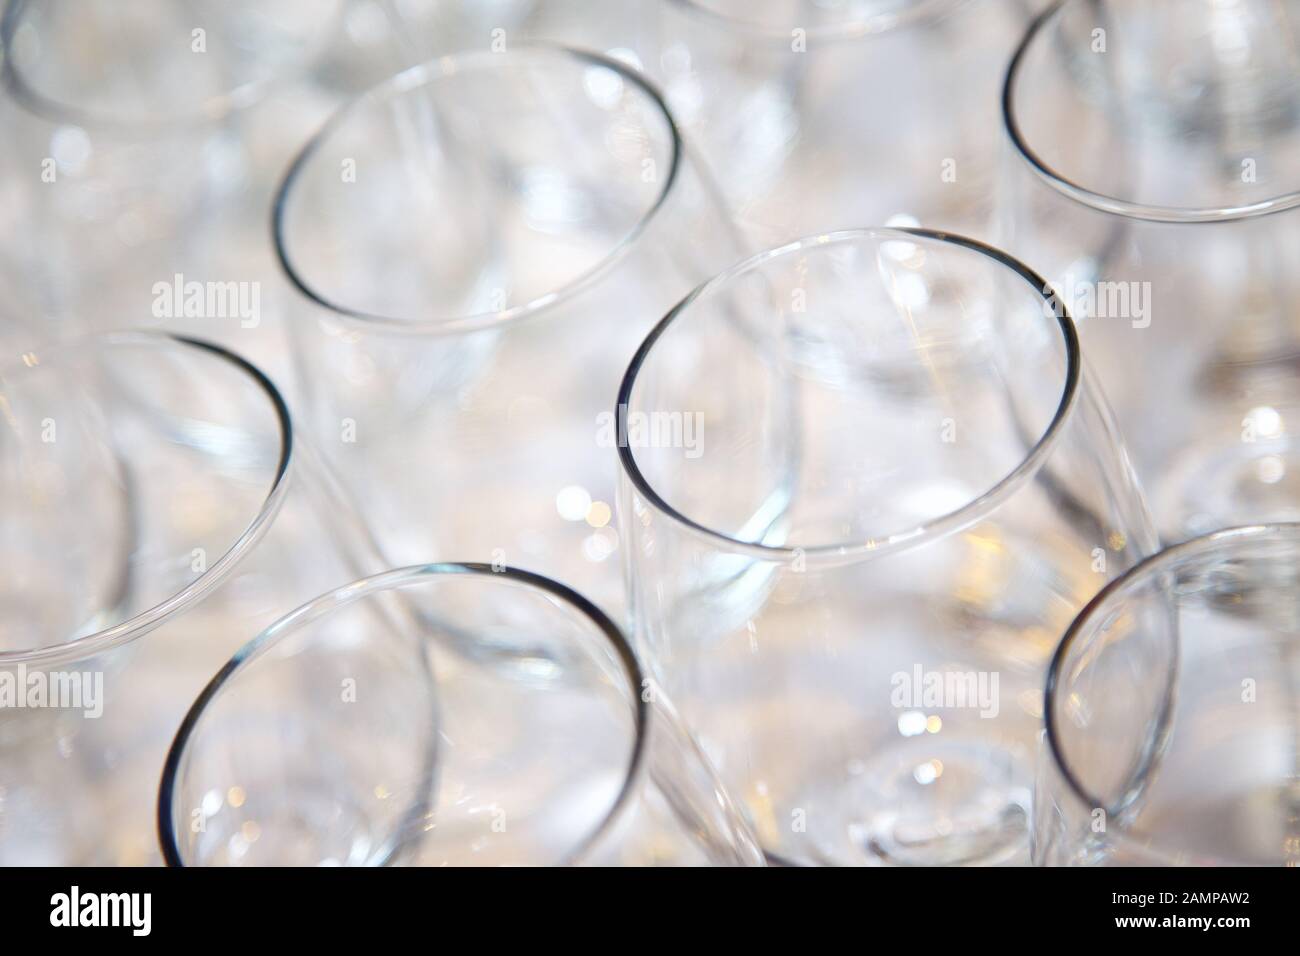 Collection de verres vides disposées sur un comptoir de bar ou restaurant. Banque D'Images